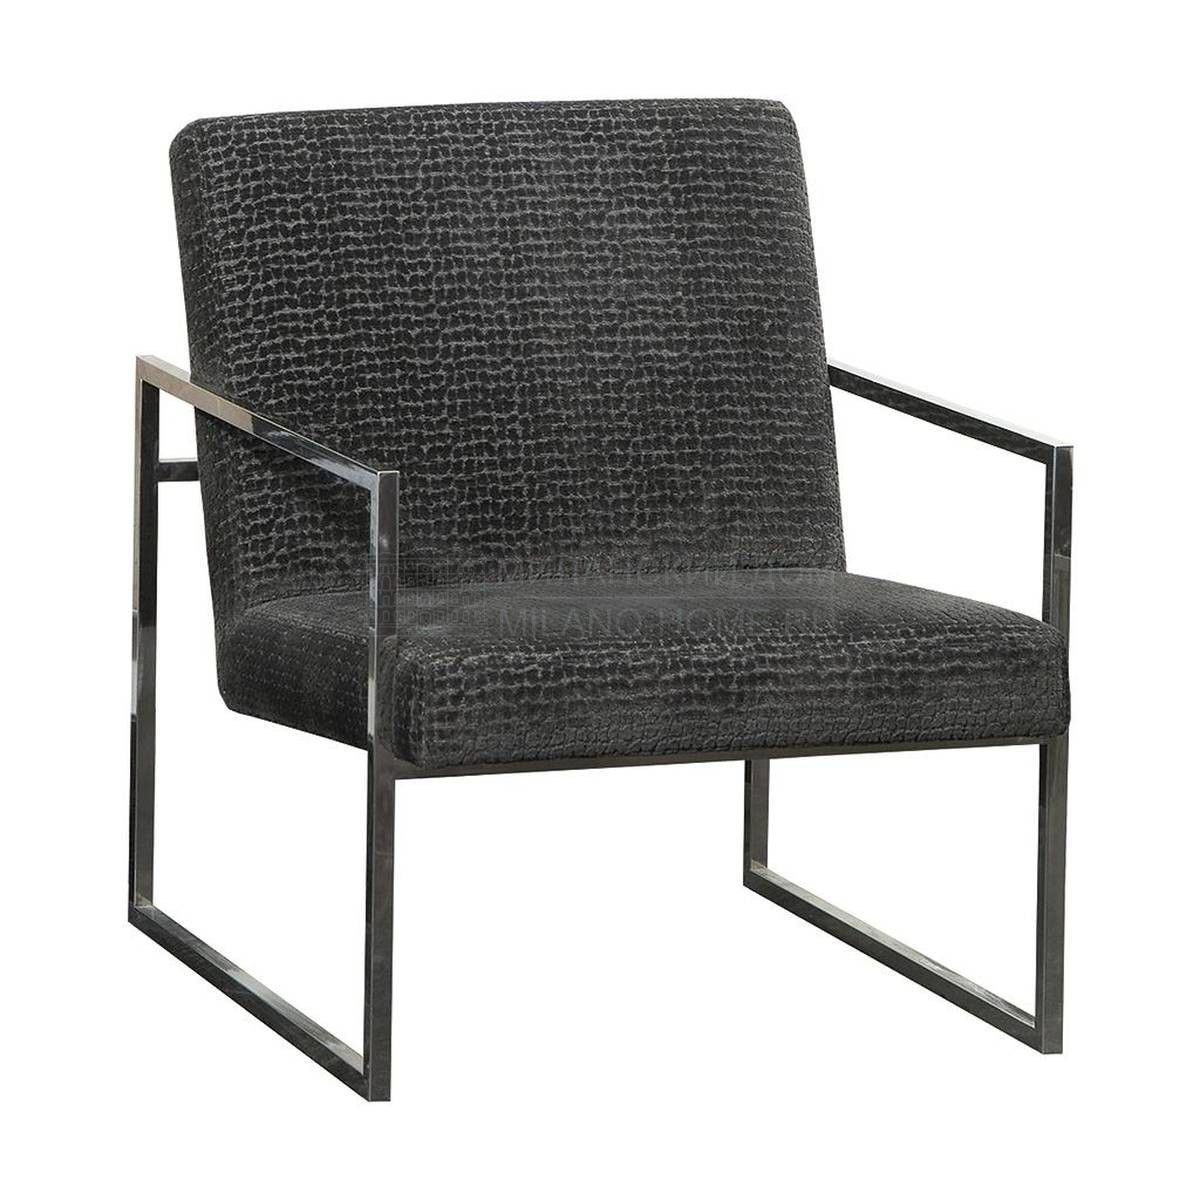 Кресло H-3044 armchair из Испании фабрики GUADARTE